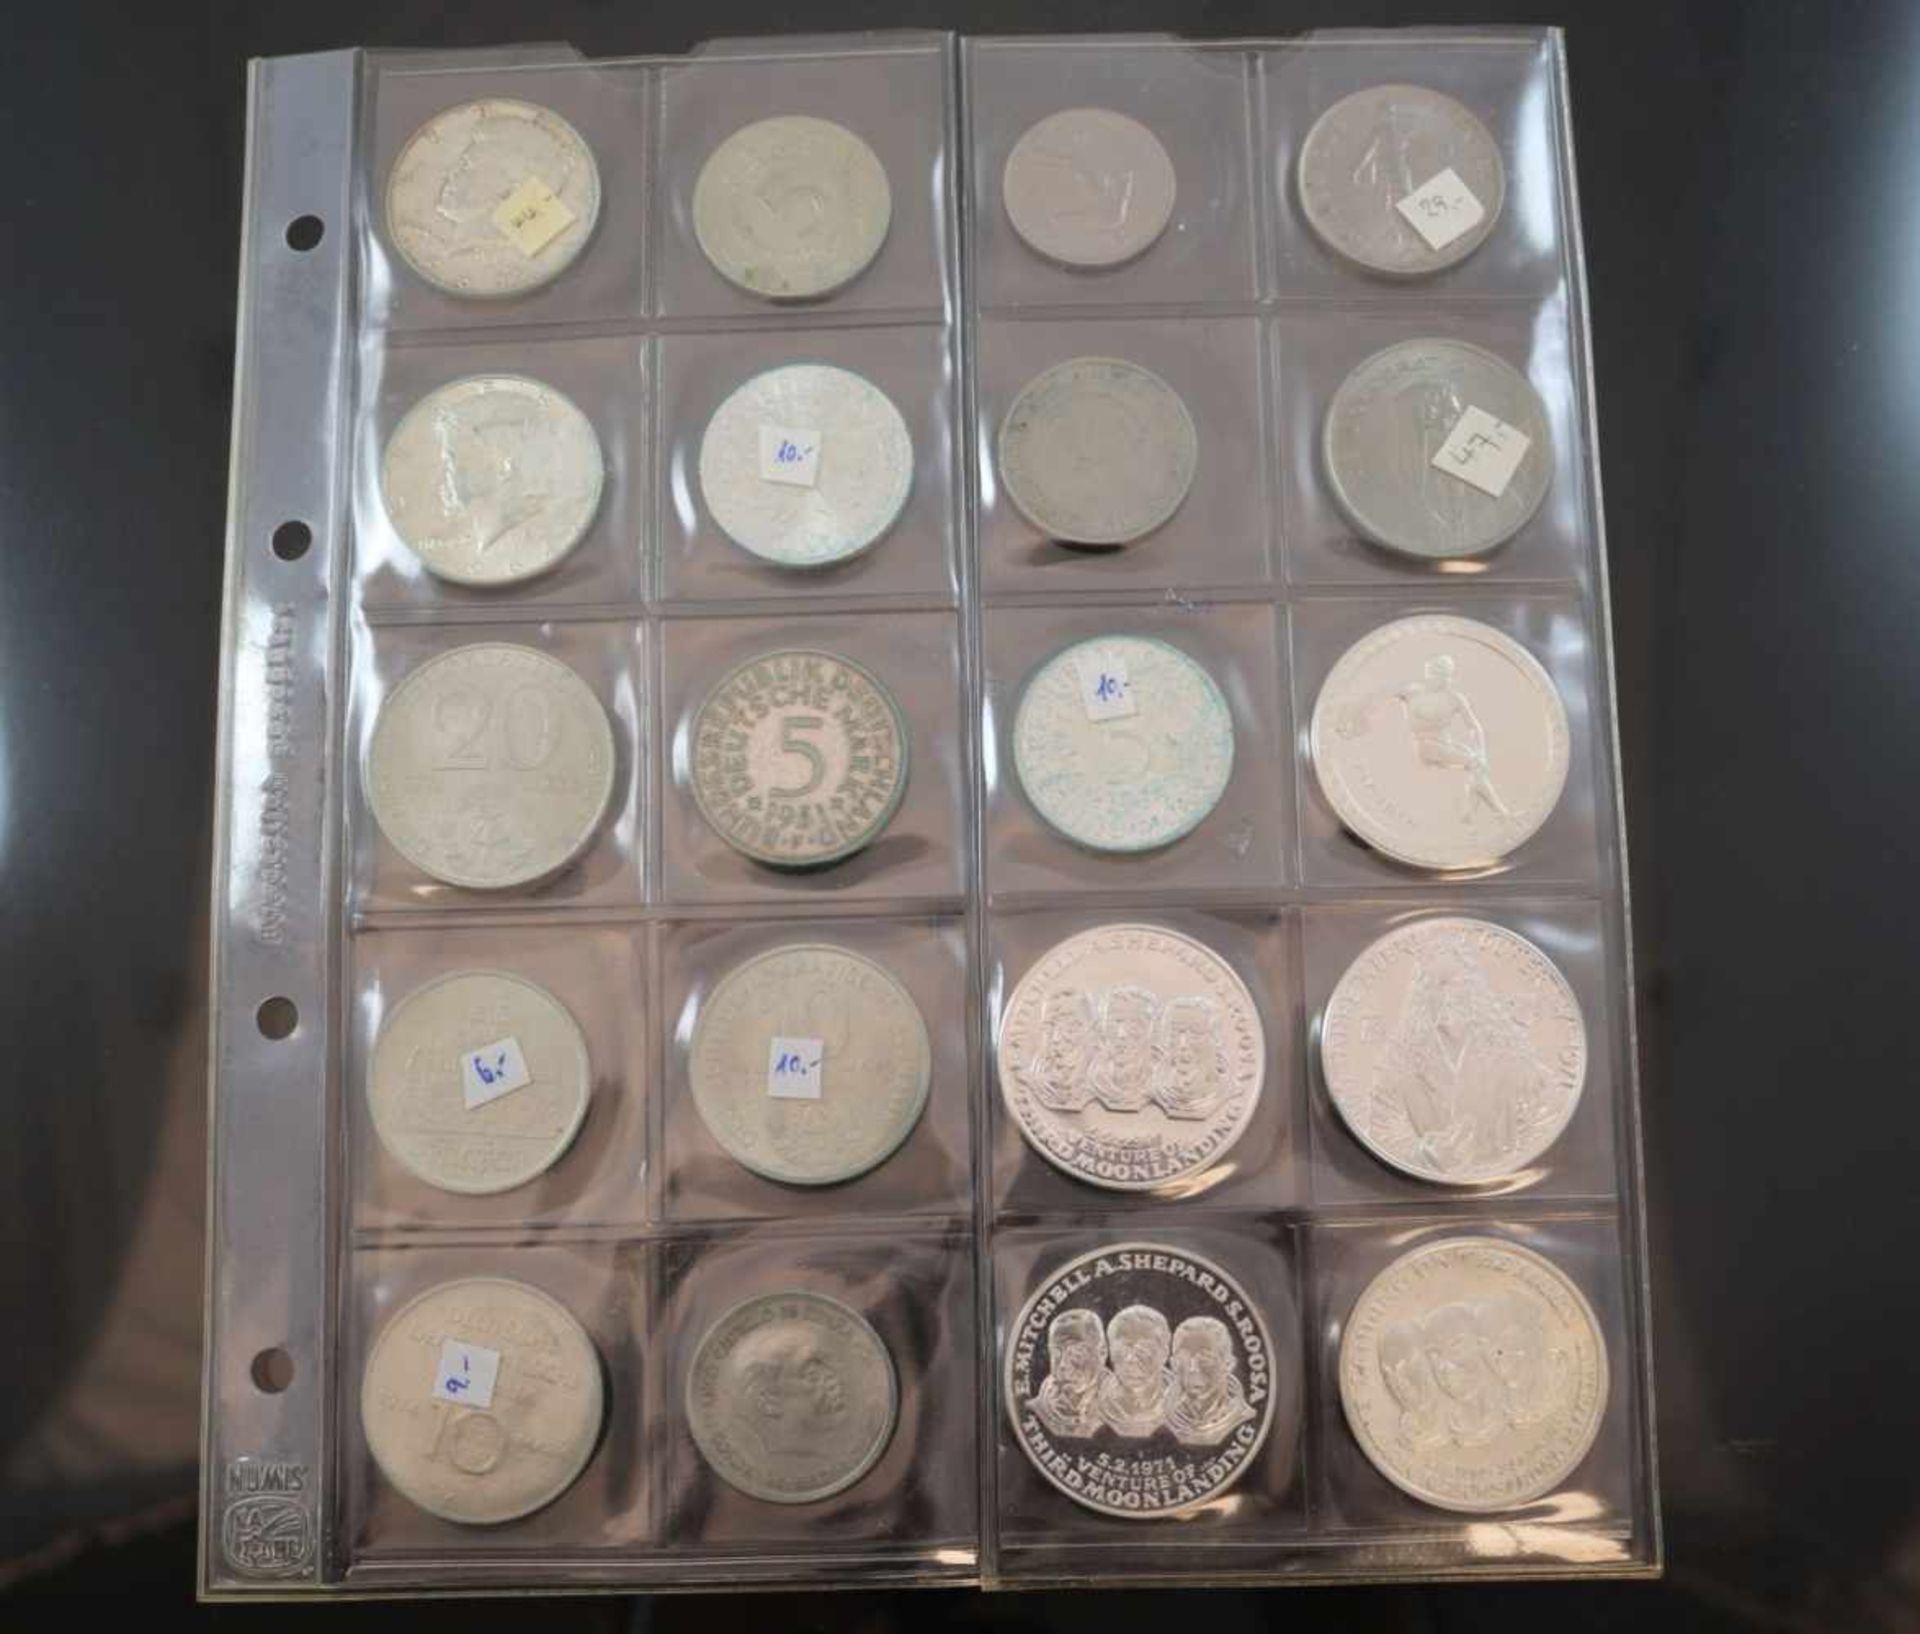 Konvolut Münzen und Medaillen15 Münzen diverser Währungen und Jahrgänge. 5 verschiedene